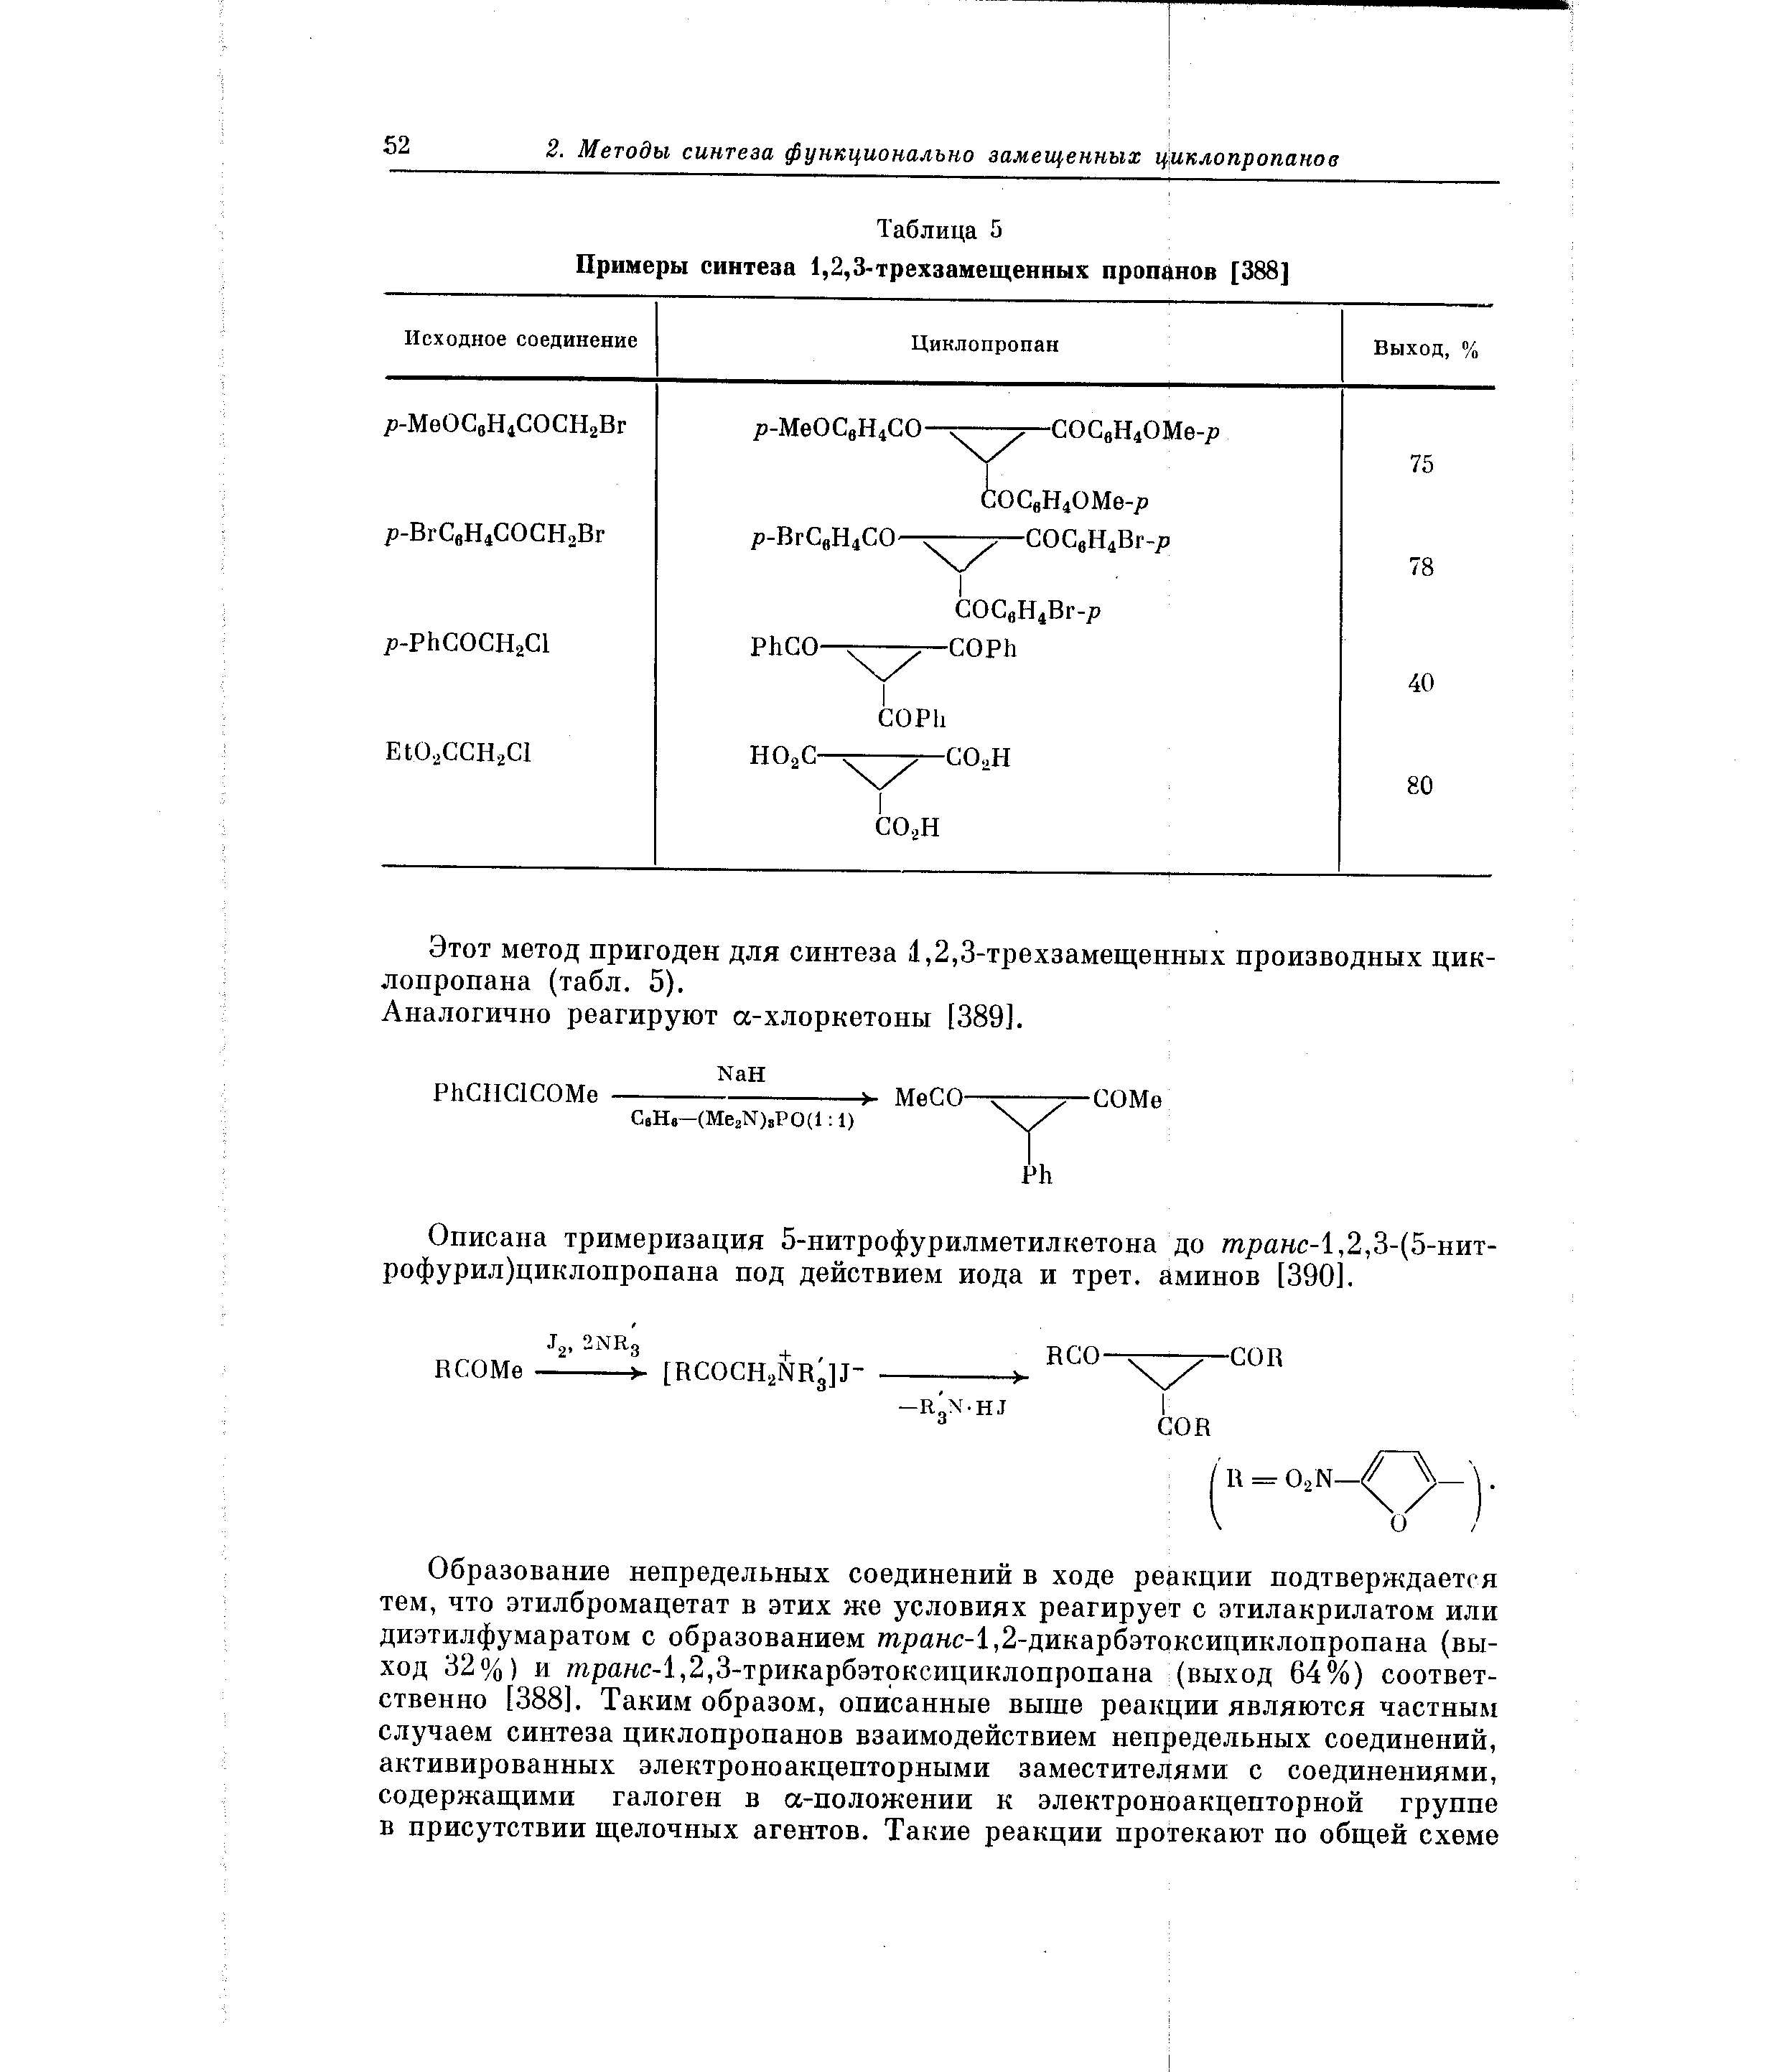 Этот метод пригоден для синтеза 1,2,3-трехзамещенных производных циклопропана (табл. 5).